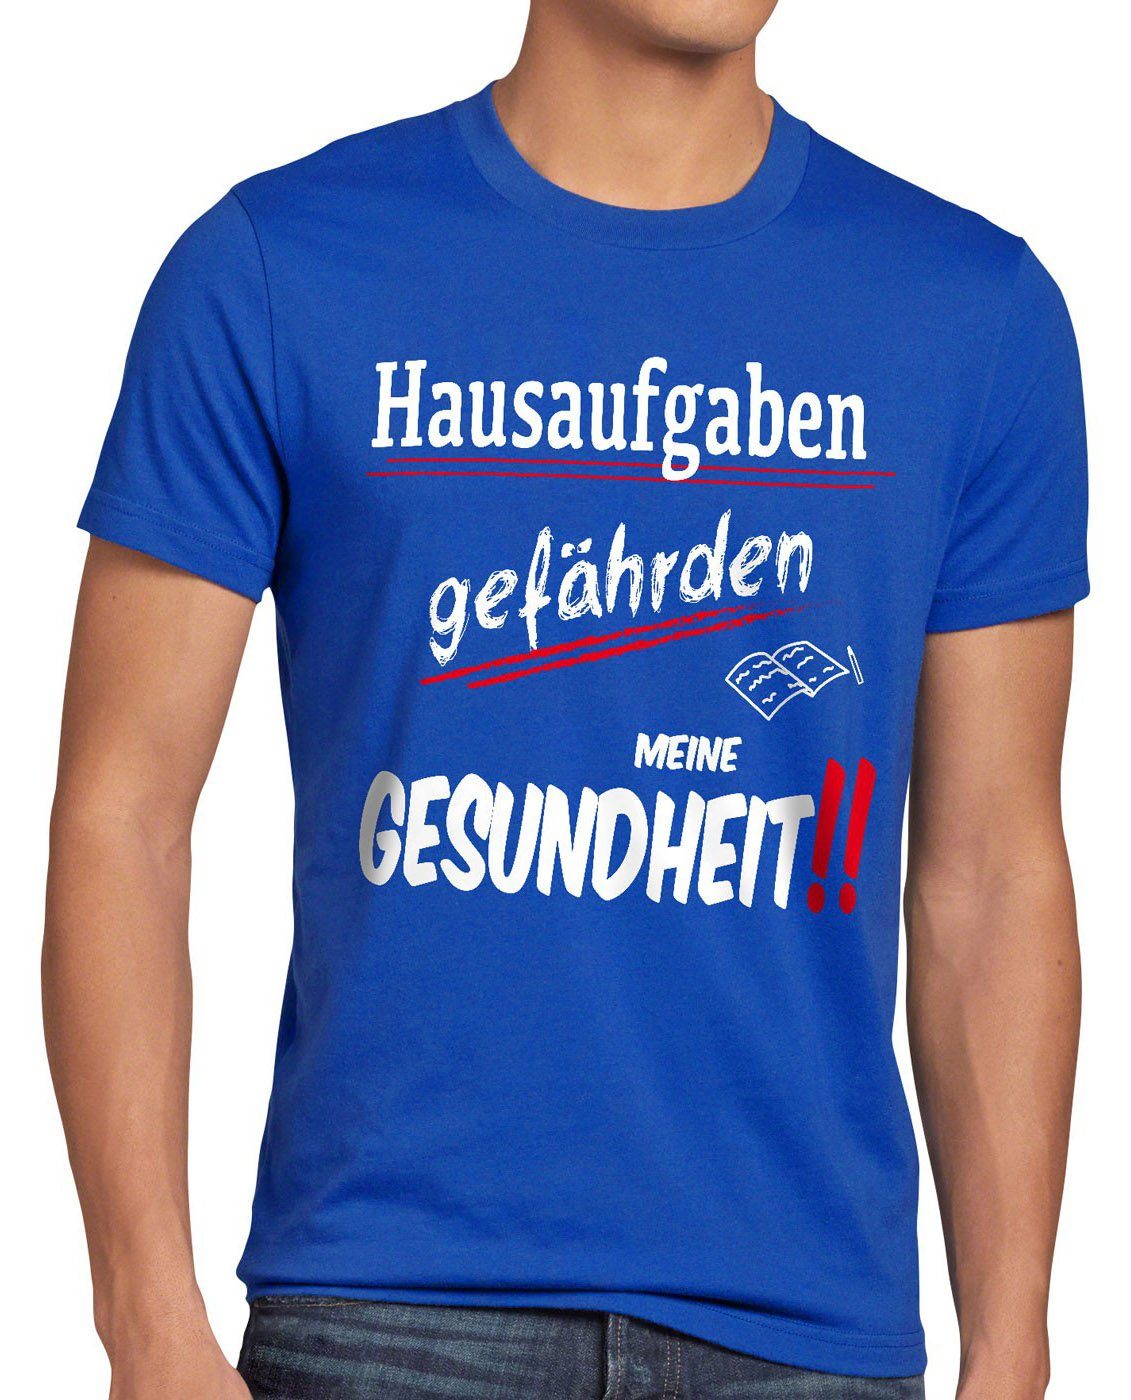 Sprüche blau Fun T-Shirt style3 Herren gefährden uni Print-Shirt Hausaufgaben schule Gesundheit schüler